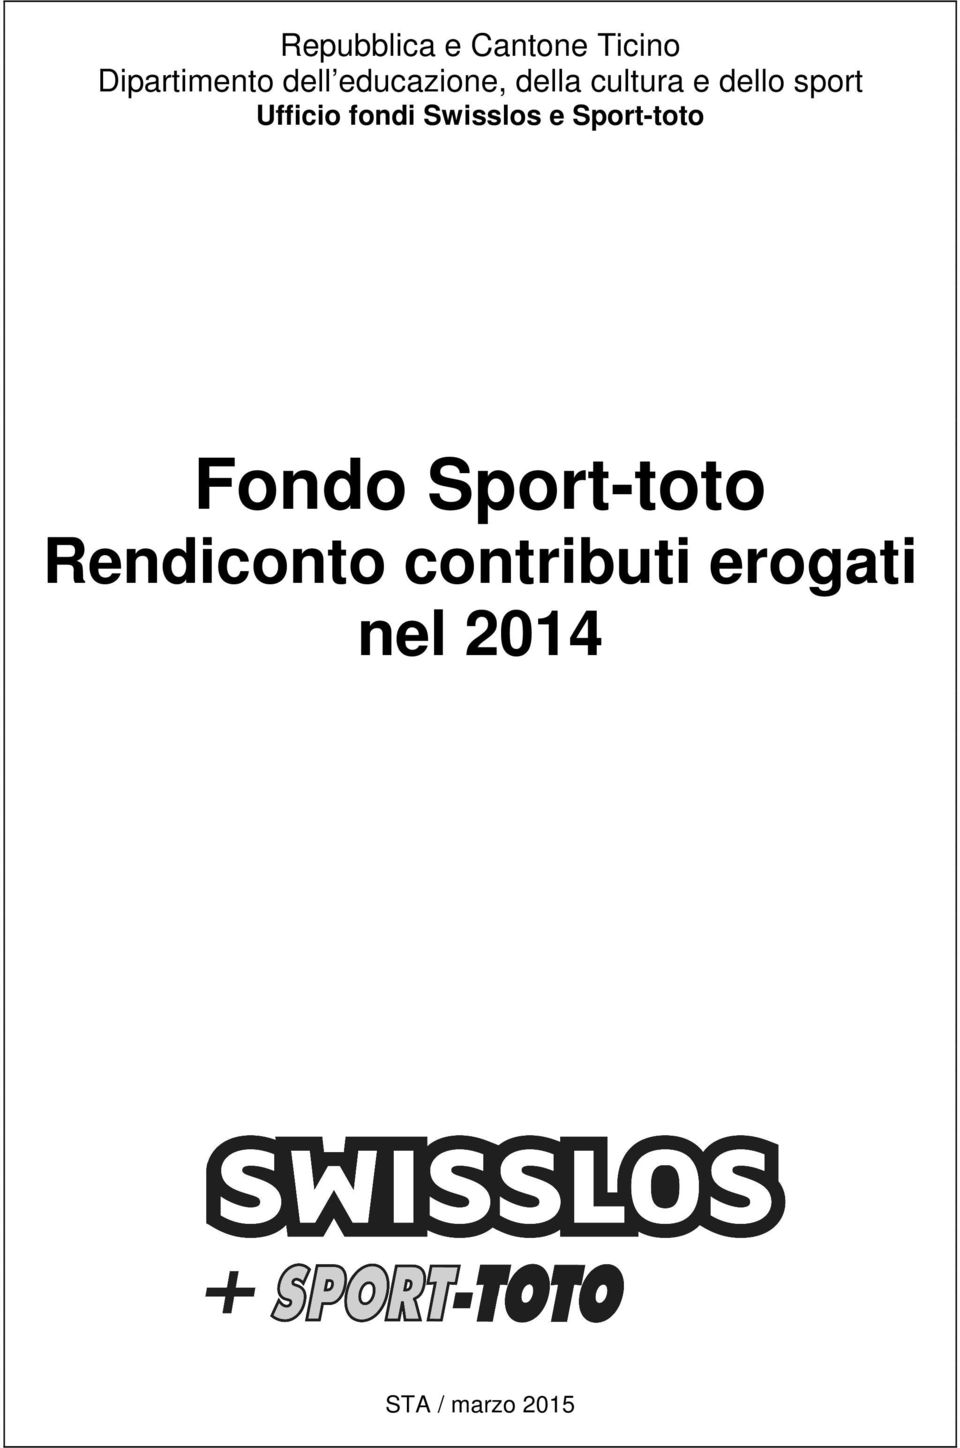 Ufficio fondi Swisslos e Sport-toto